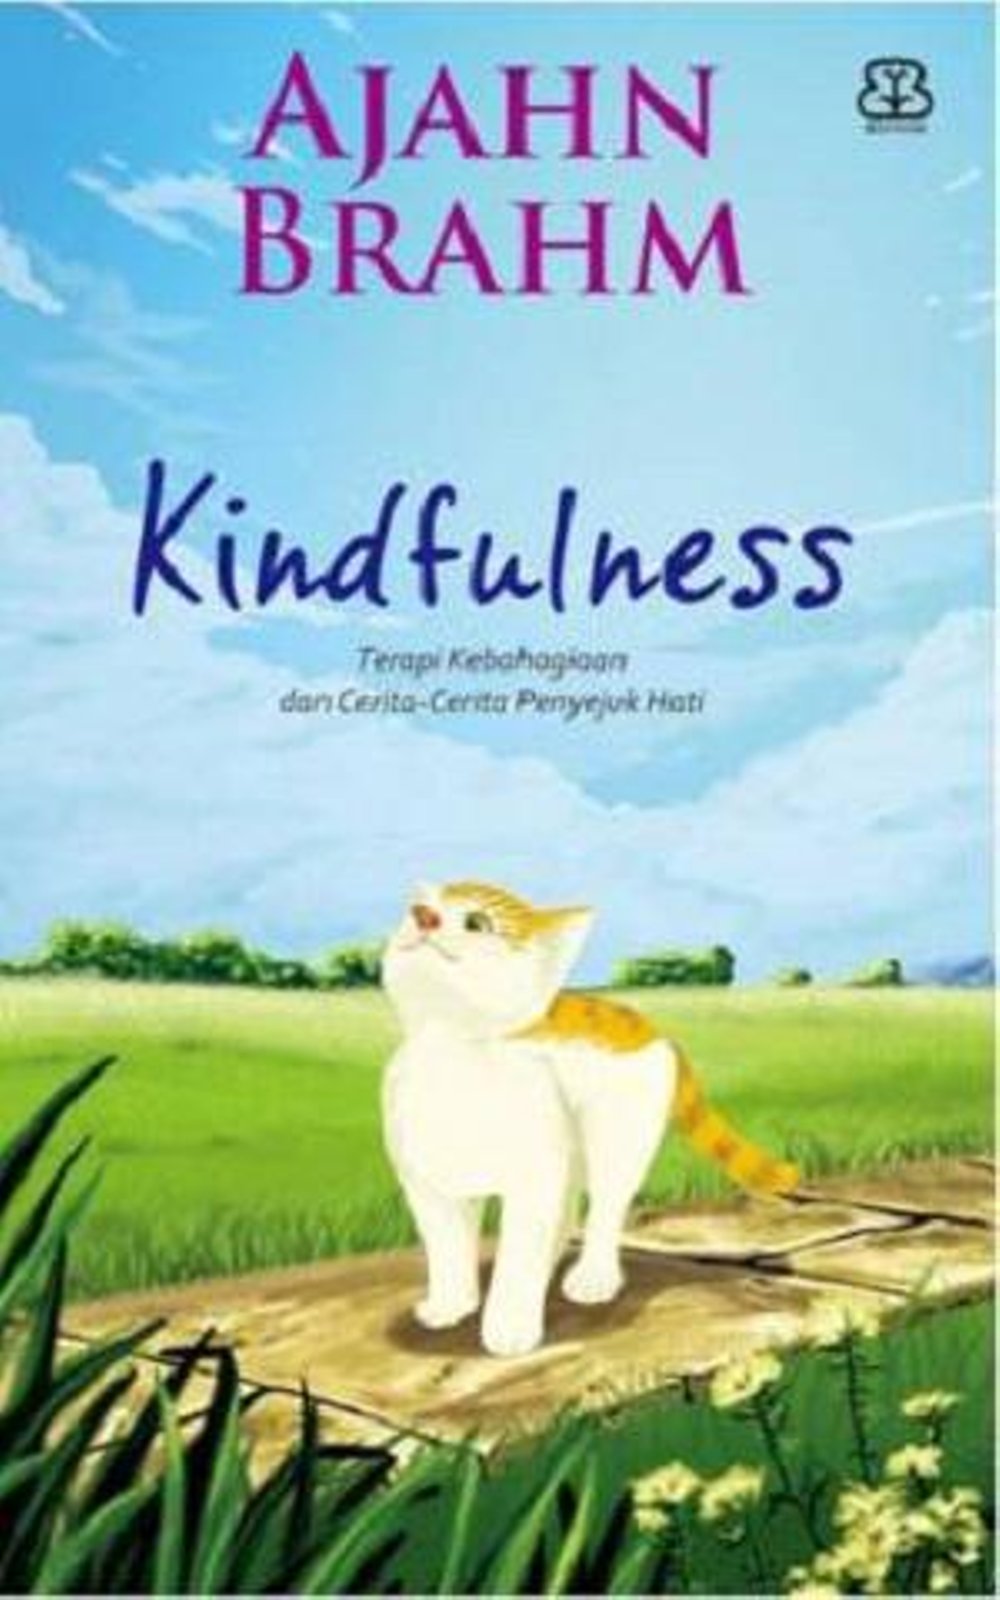 Kindfulness :  terapi kebahagiaan dan cerita-cerita penyejuk hati